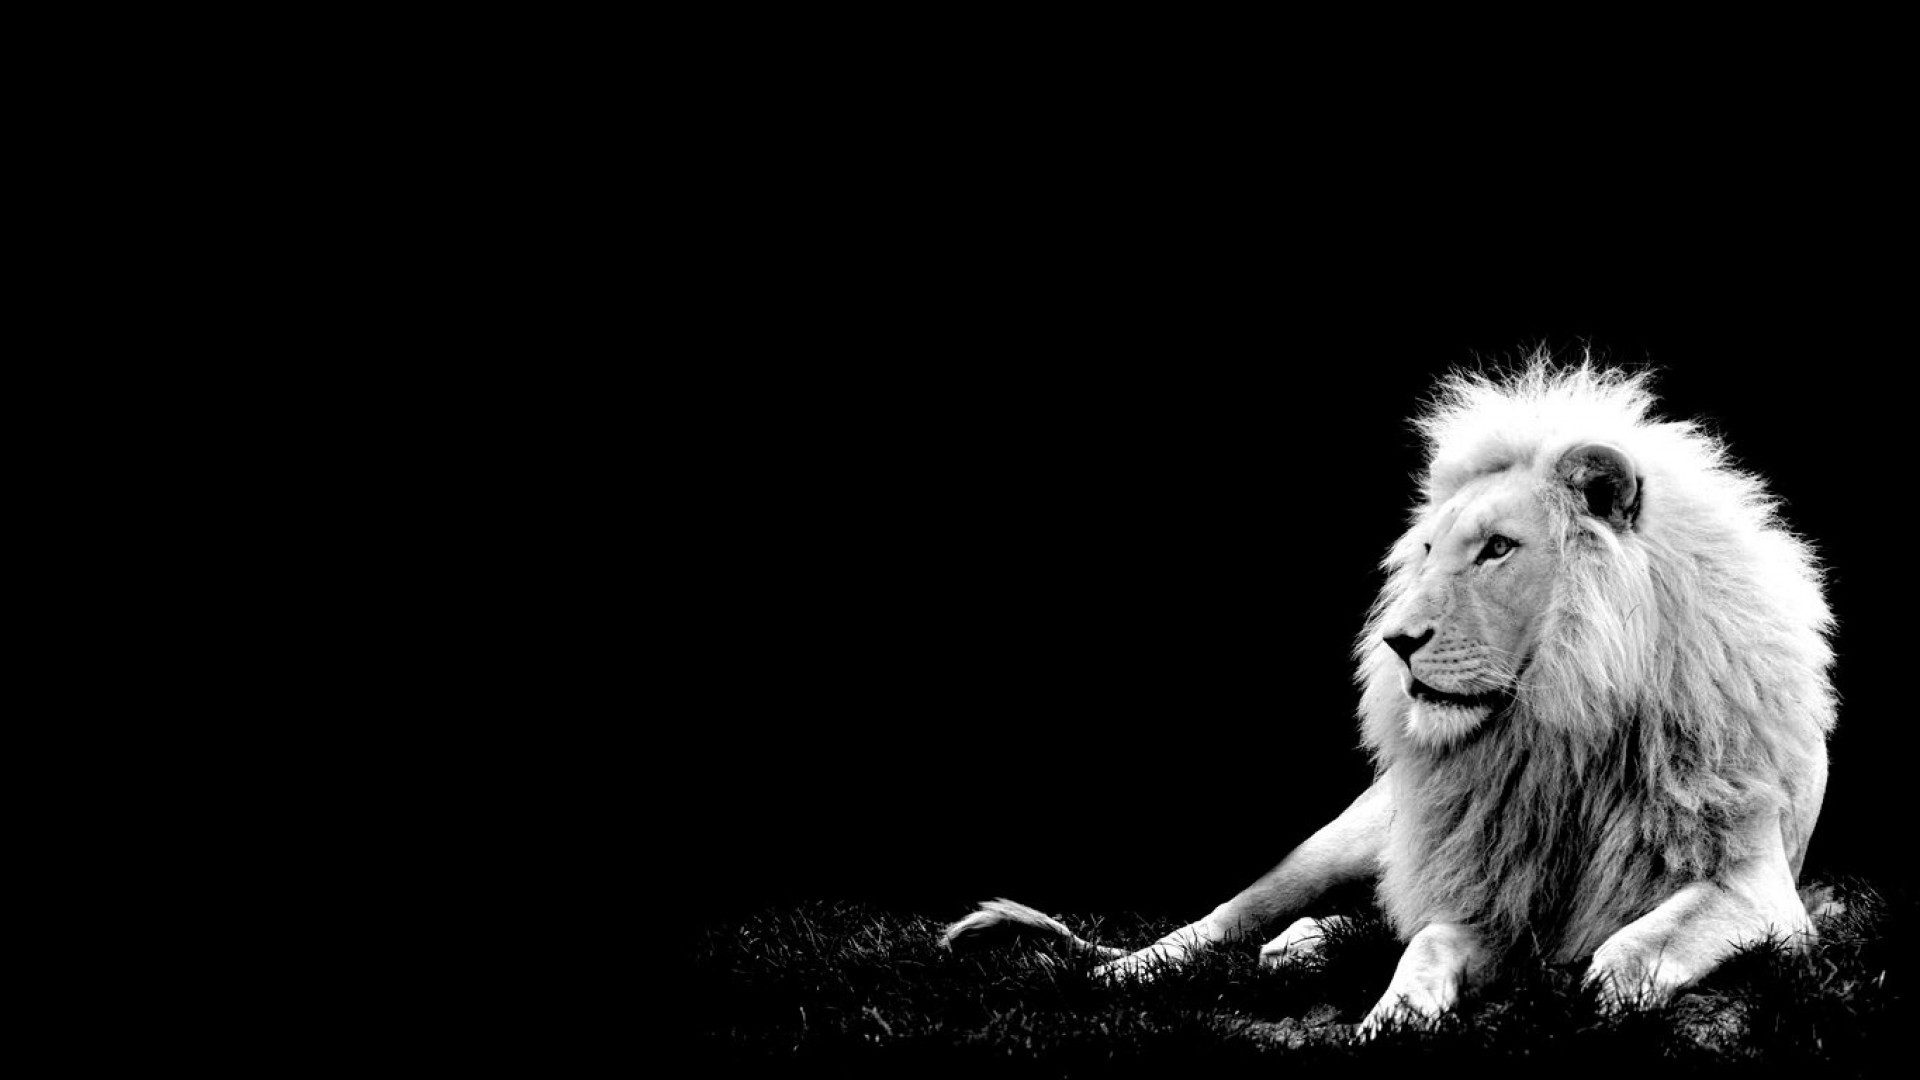 壁紙のhd 1920x1080,ライオン,白い,黒,ネコ科,黒と白